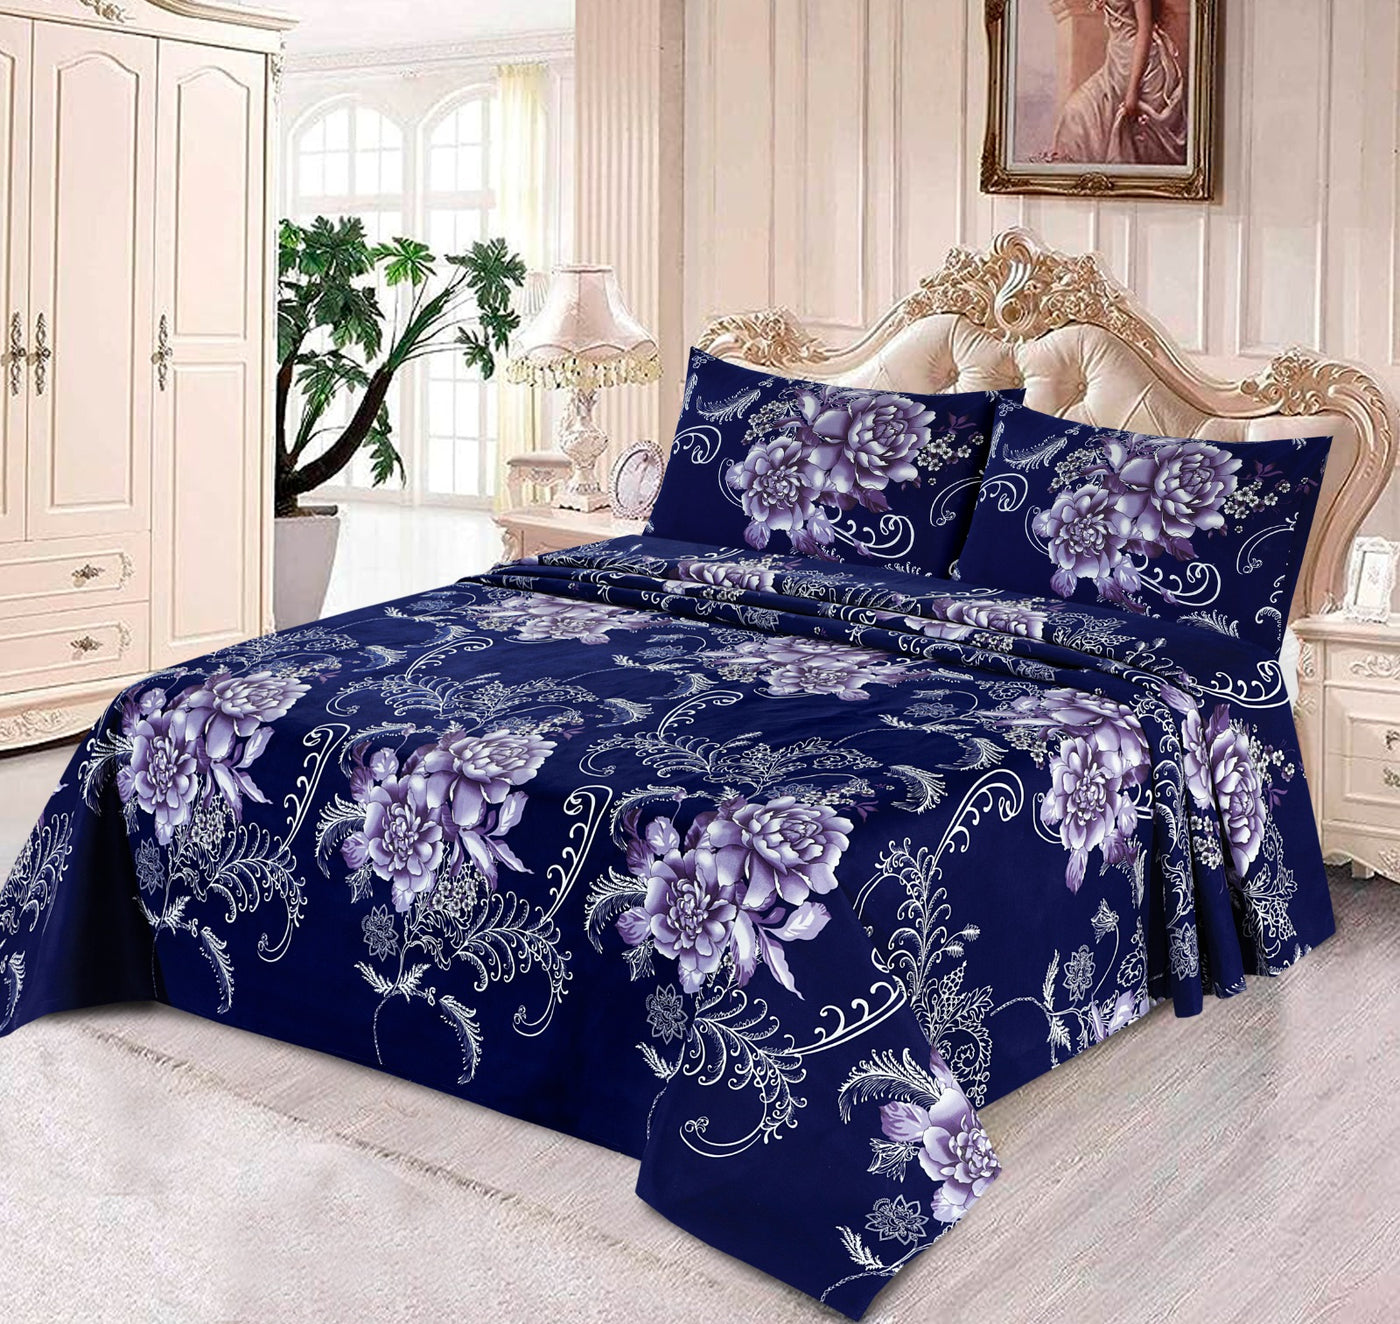 Blue king - Bed Sheet Set